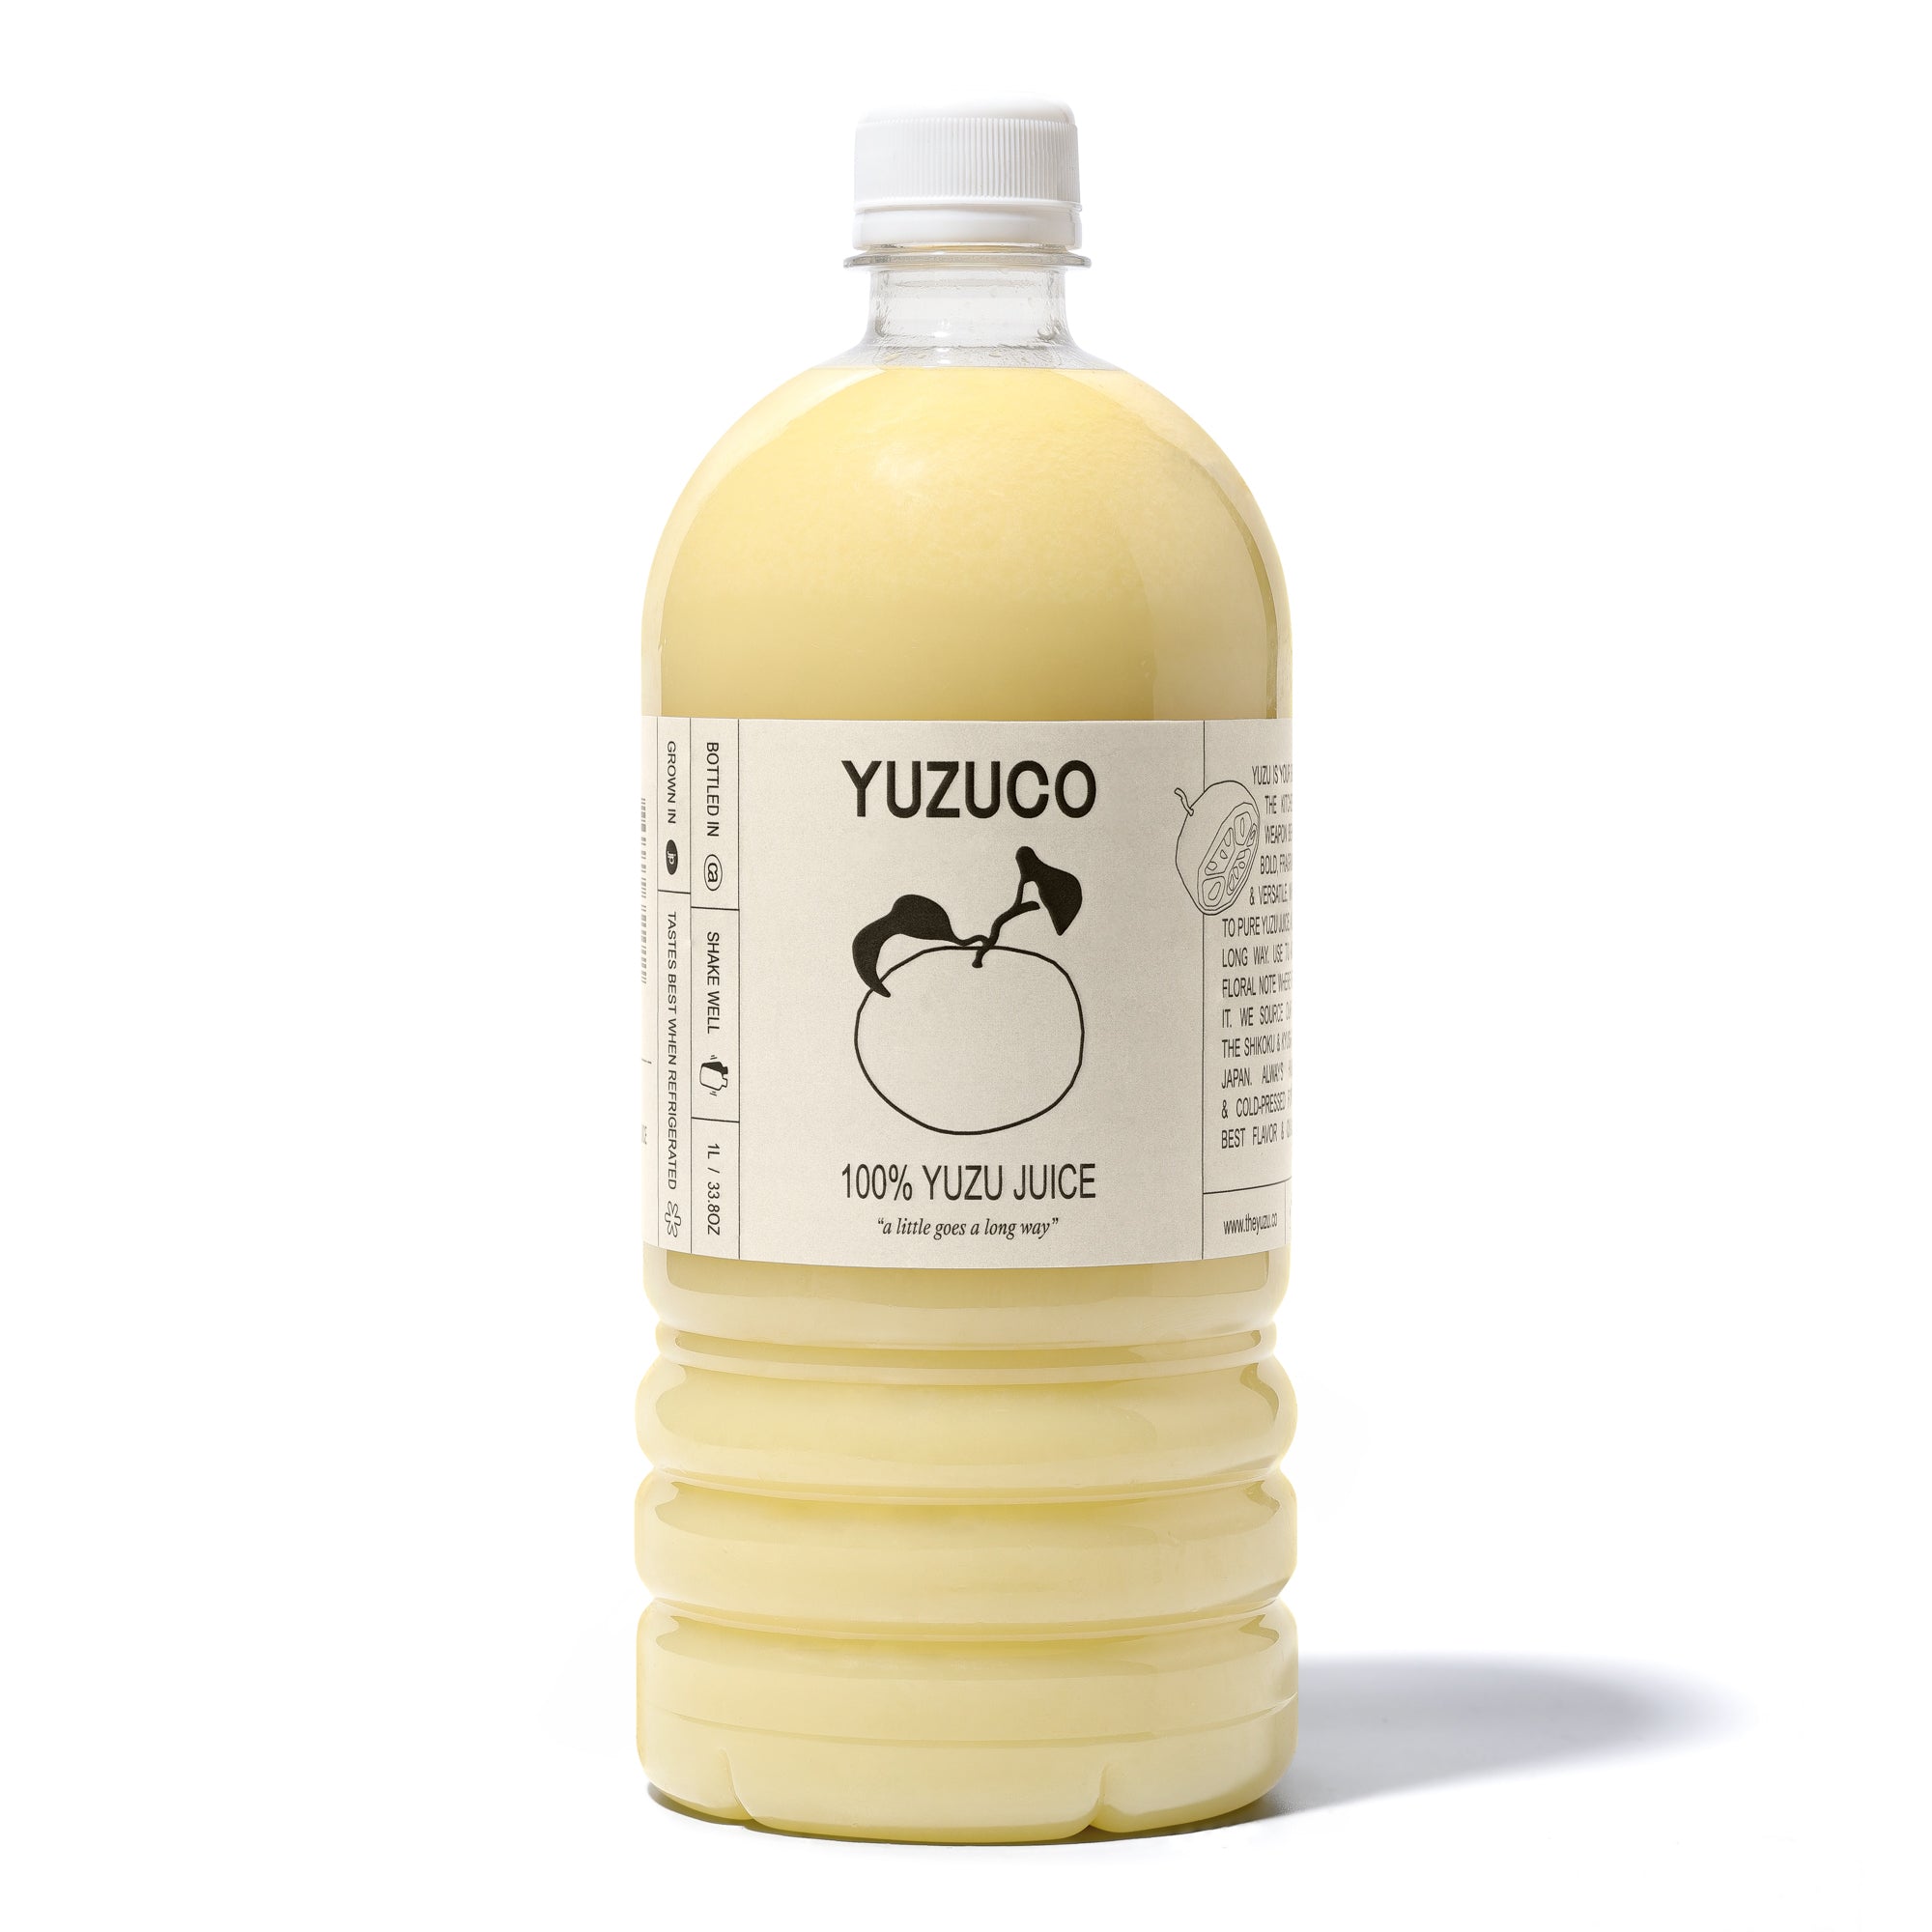 Yuzu Juice from Japan - buy online at Gourmet Food Store